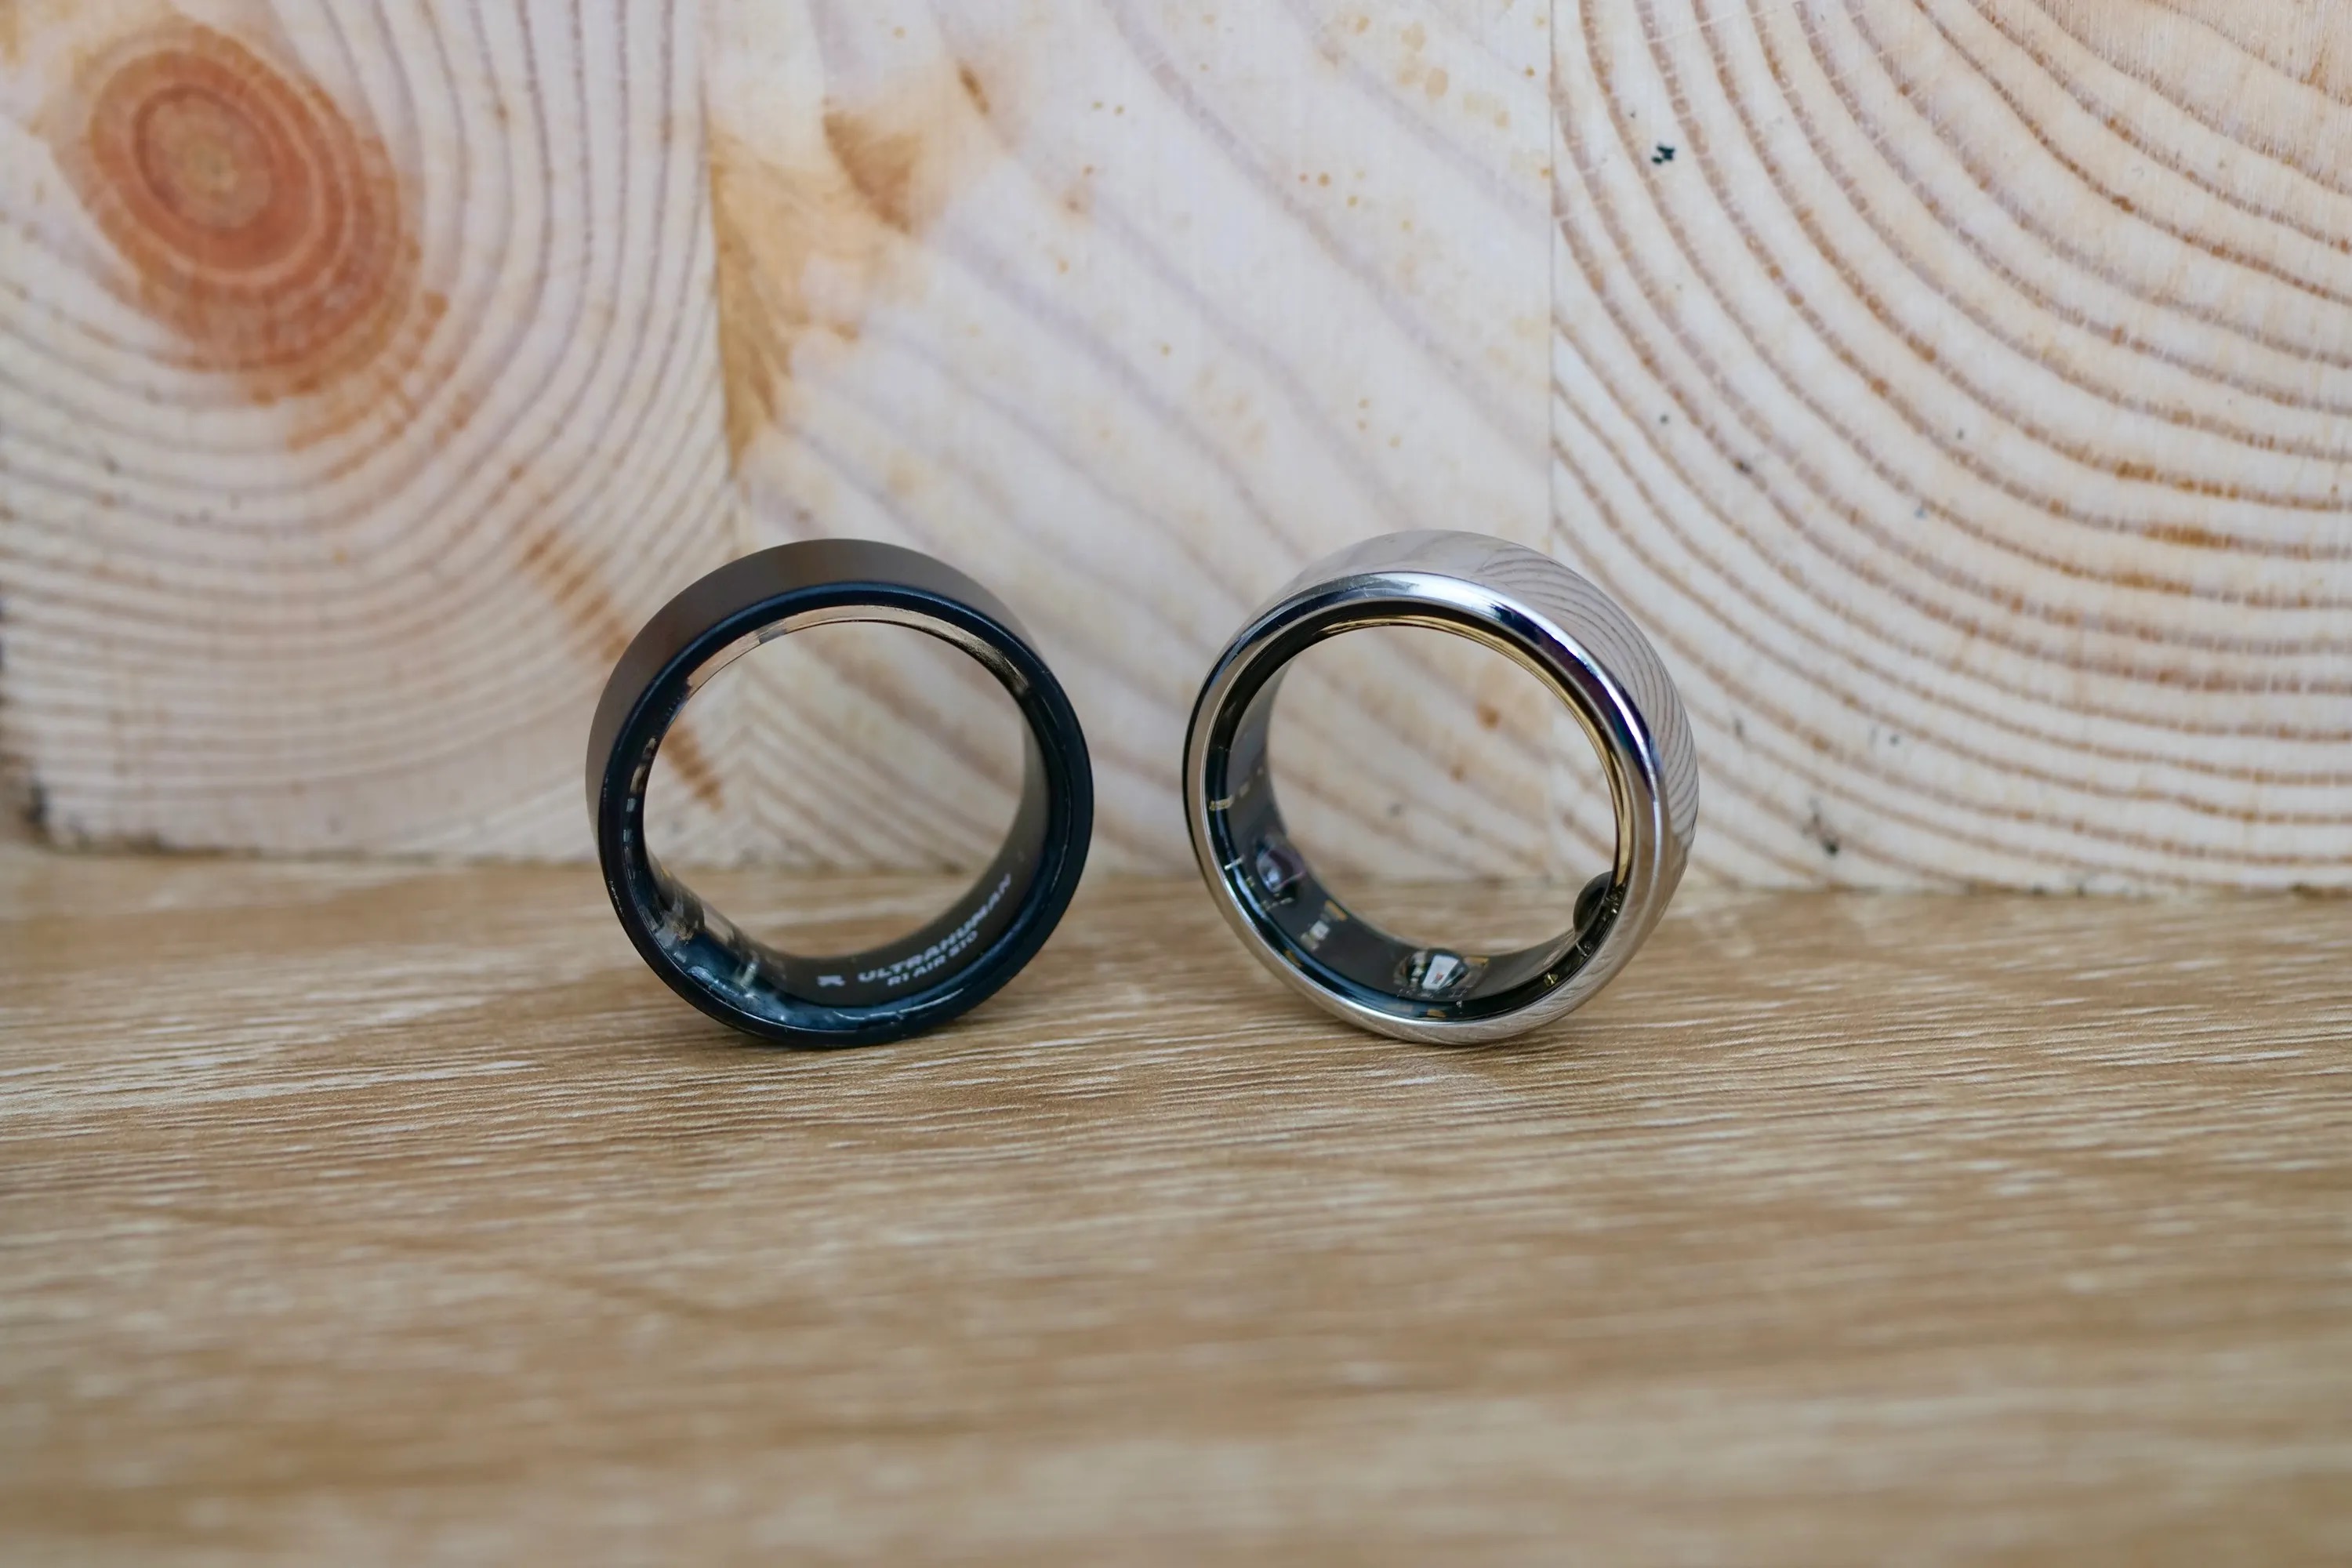 Circular es lo último en anillos inteligentes y quiere competir con Samsung  y Oura Ring clamando ser el más ligero del mundo